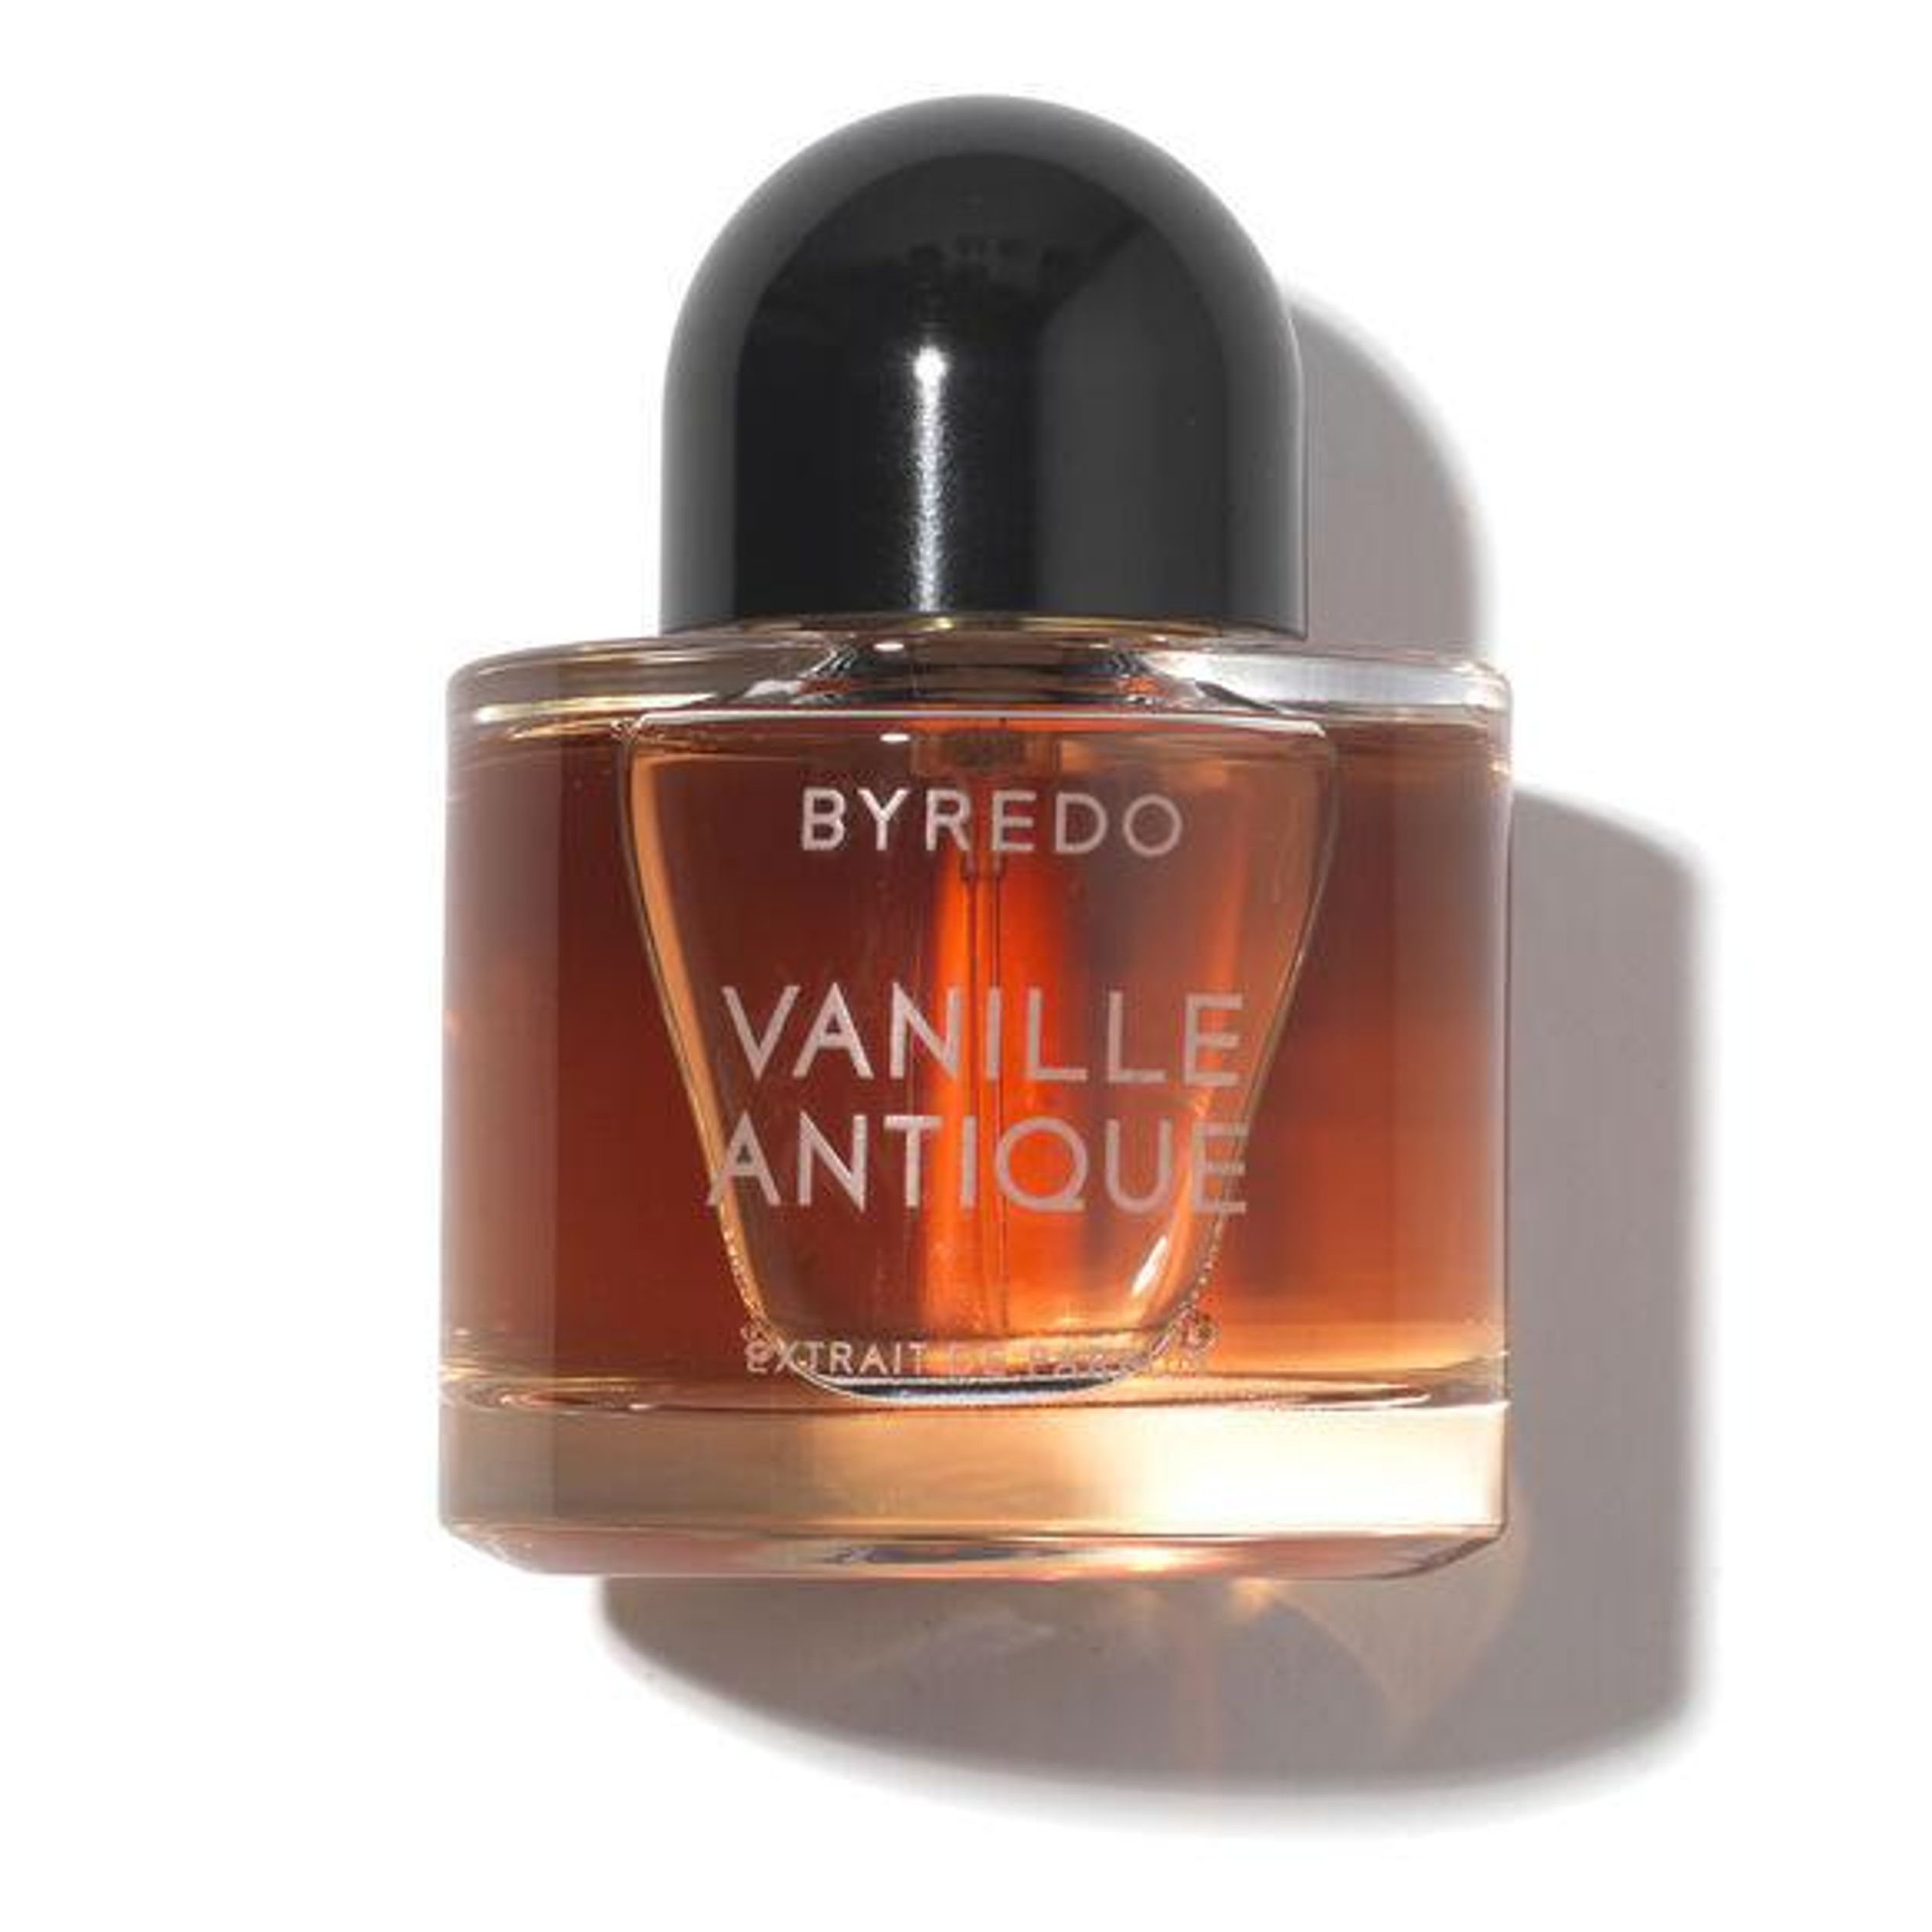 Vanille Antique Perfume Extract